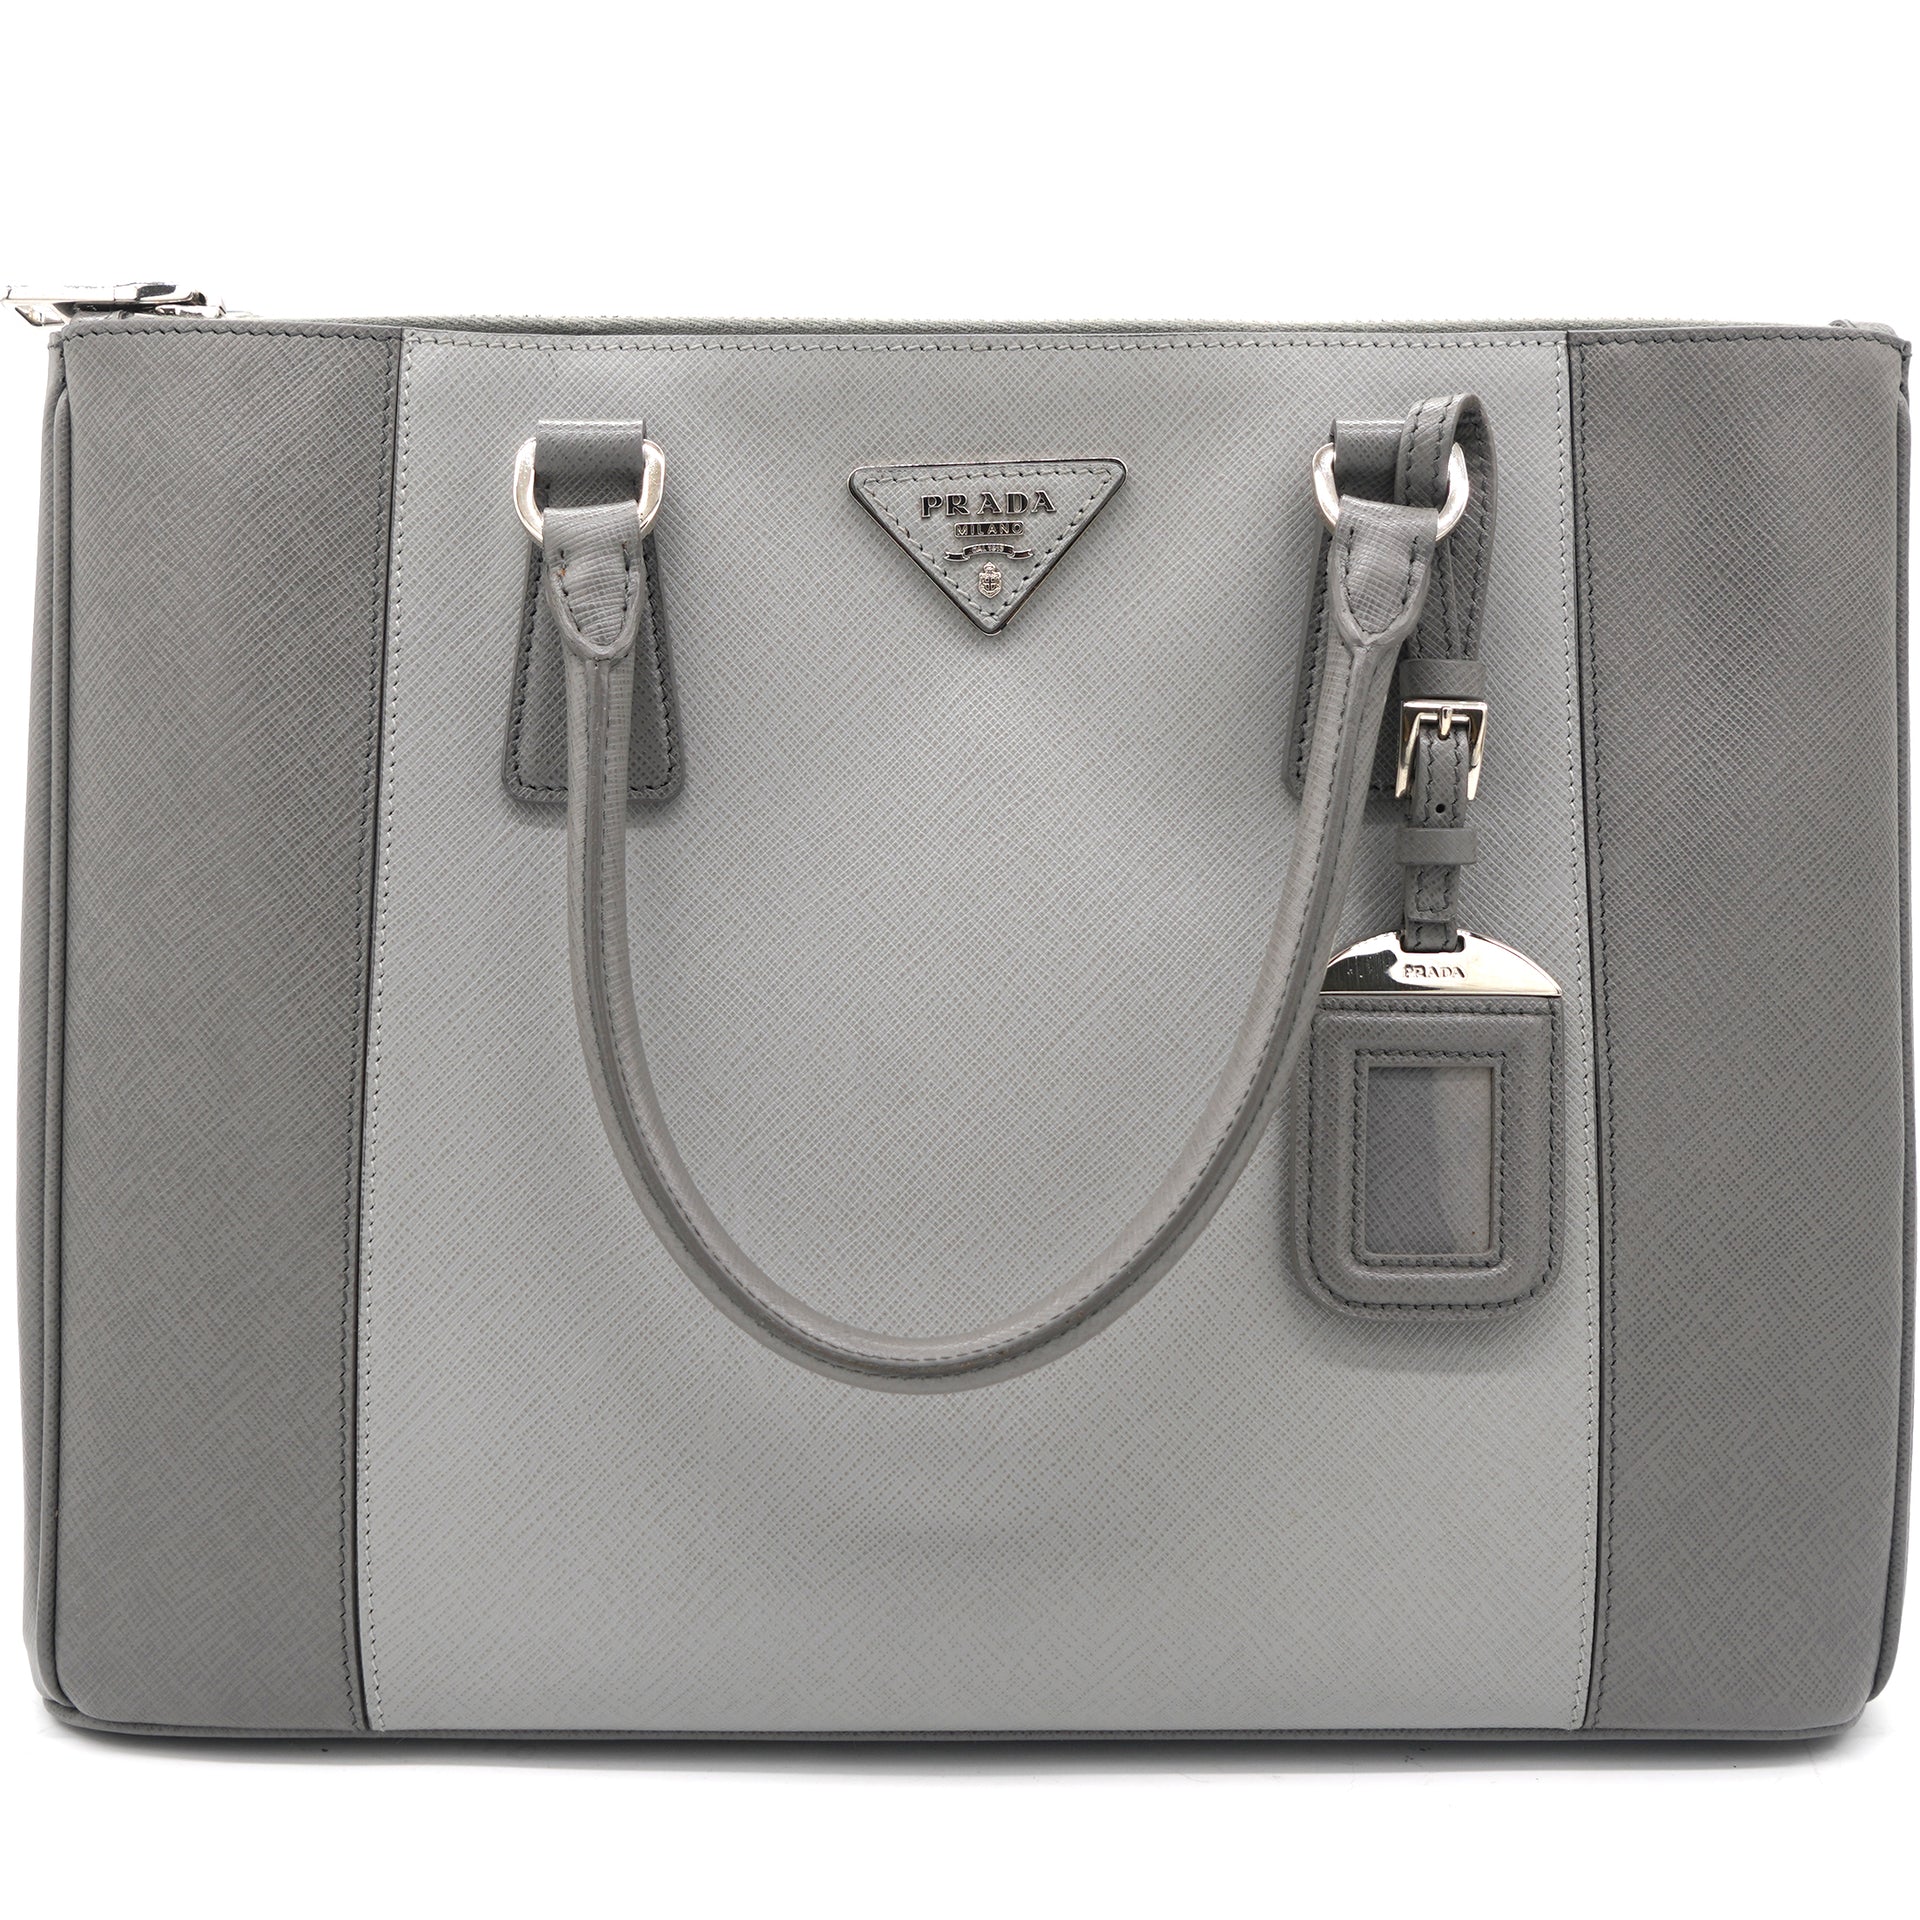 PRADA Grey Galleria Saffiano Large Bag*100% Authentic*